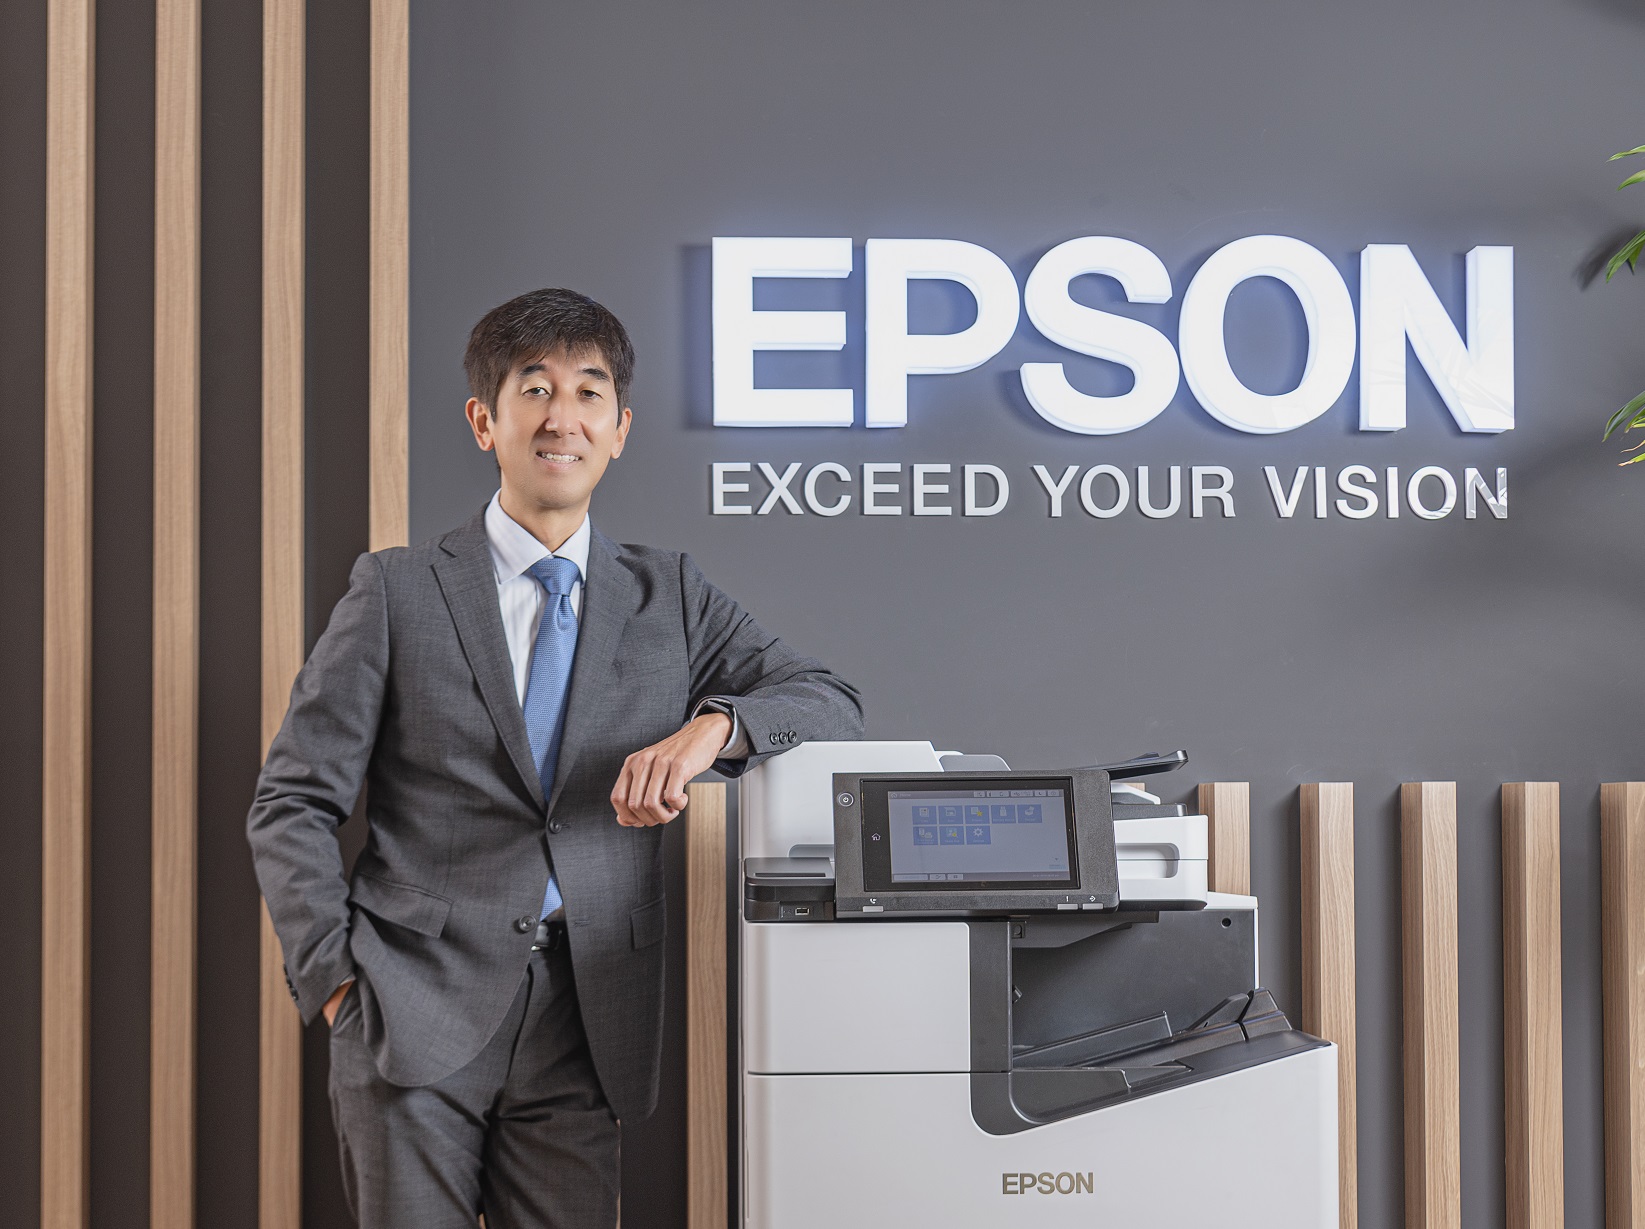 Epson Việt Nam bổ nhiệm tân Tổng giám đốc: Thúc đẩy sự chuyển hướng tích cực cho thị trường máy in tại Việt Nam